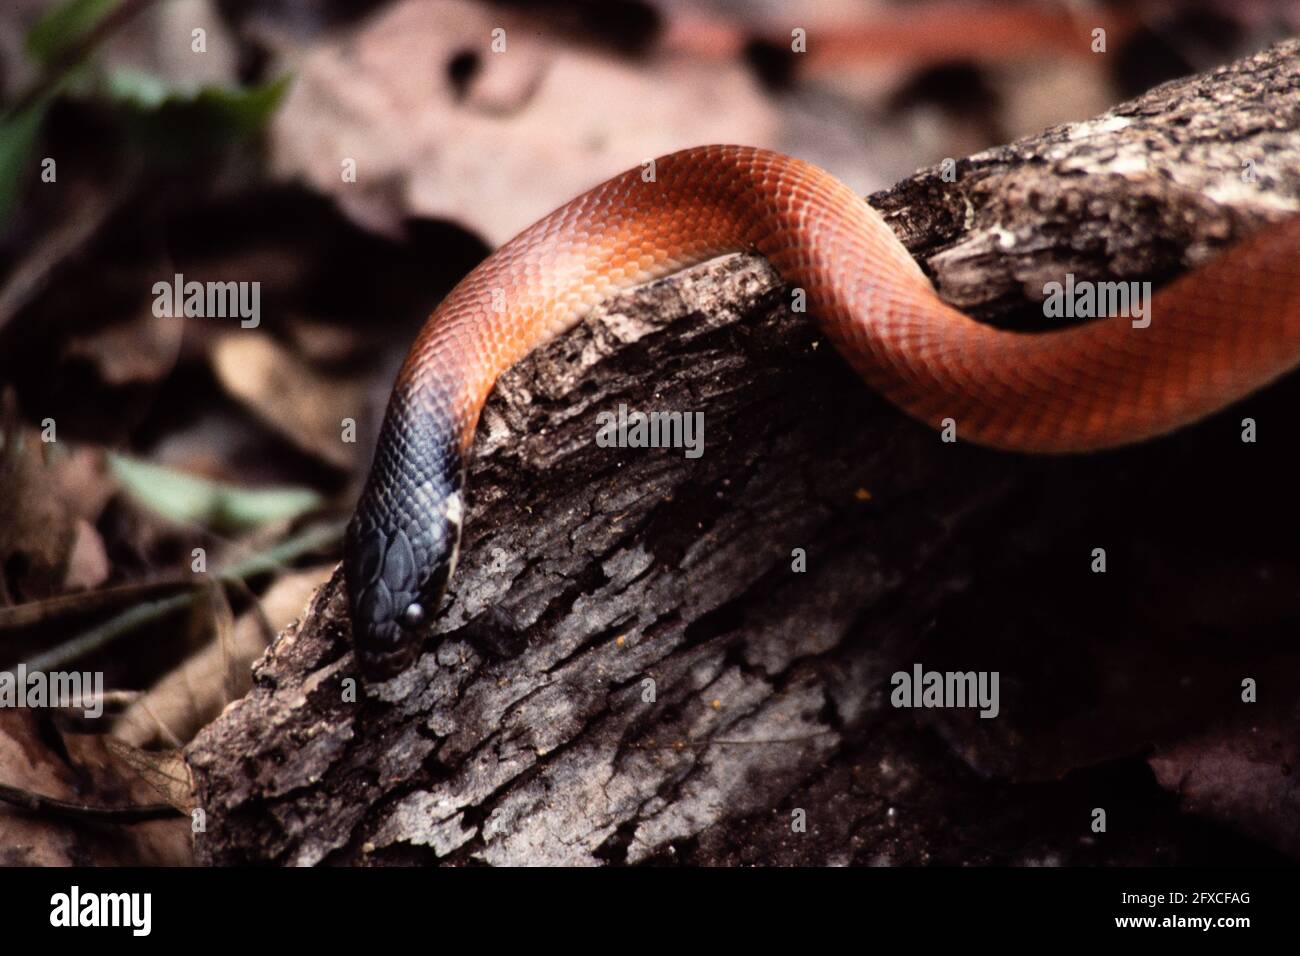 Una giovane Mussurana, Clelia clelia, a Panama. Mussurana prede esclusivamente sui serpenti, specialmente quelli velenosi. Foto Stock